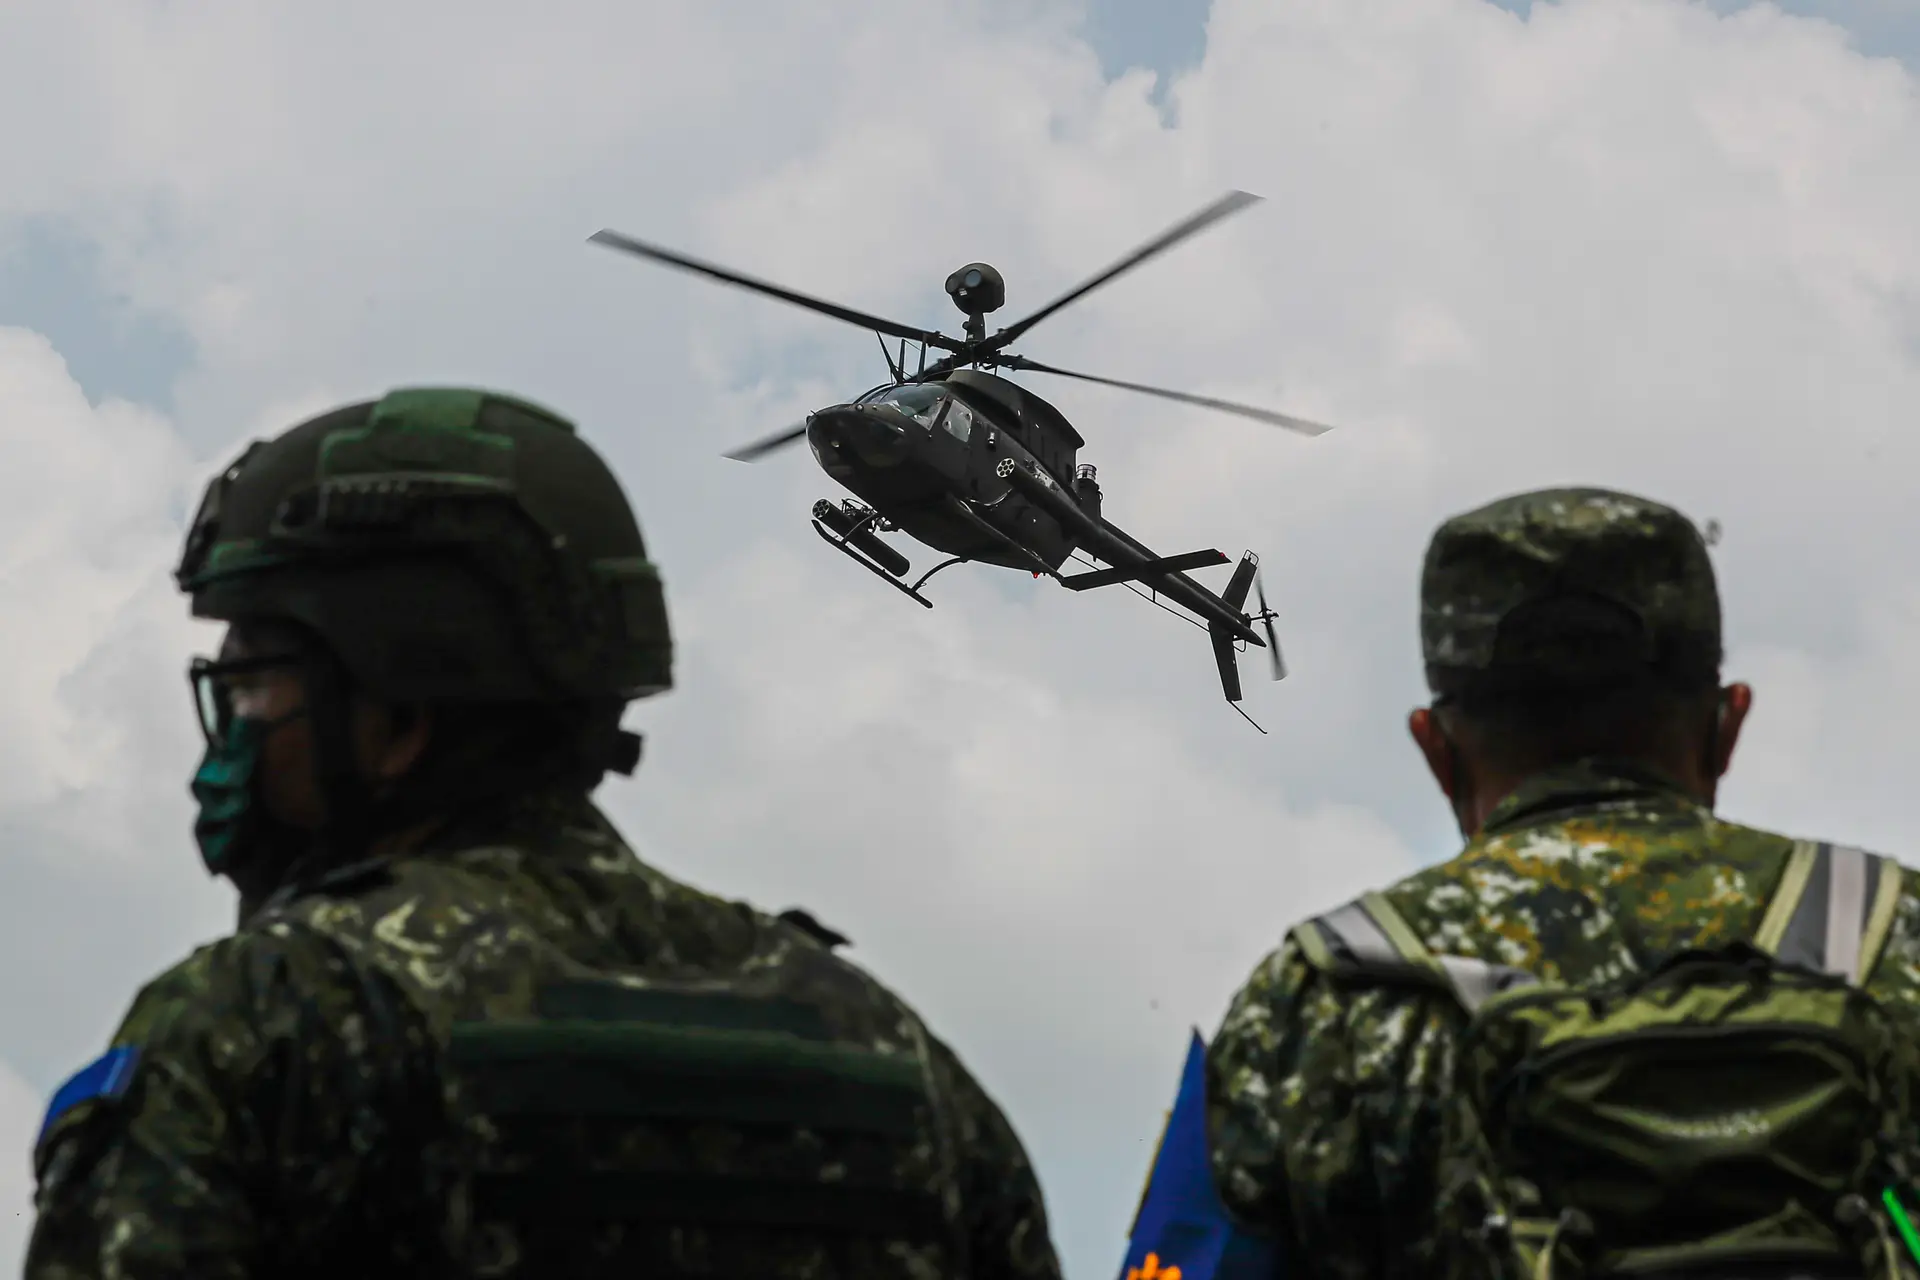 Helicóptero faz manobras de aproximação ao solo durante exercício militar, em Taiwan